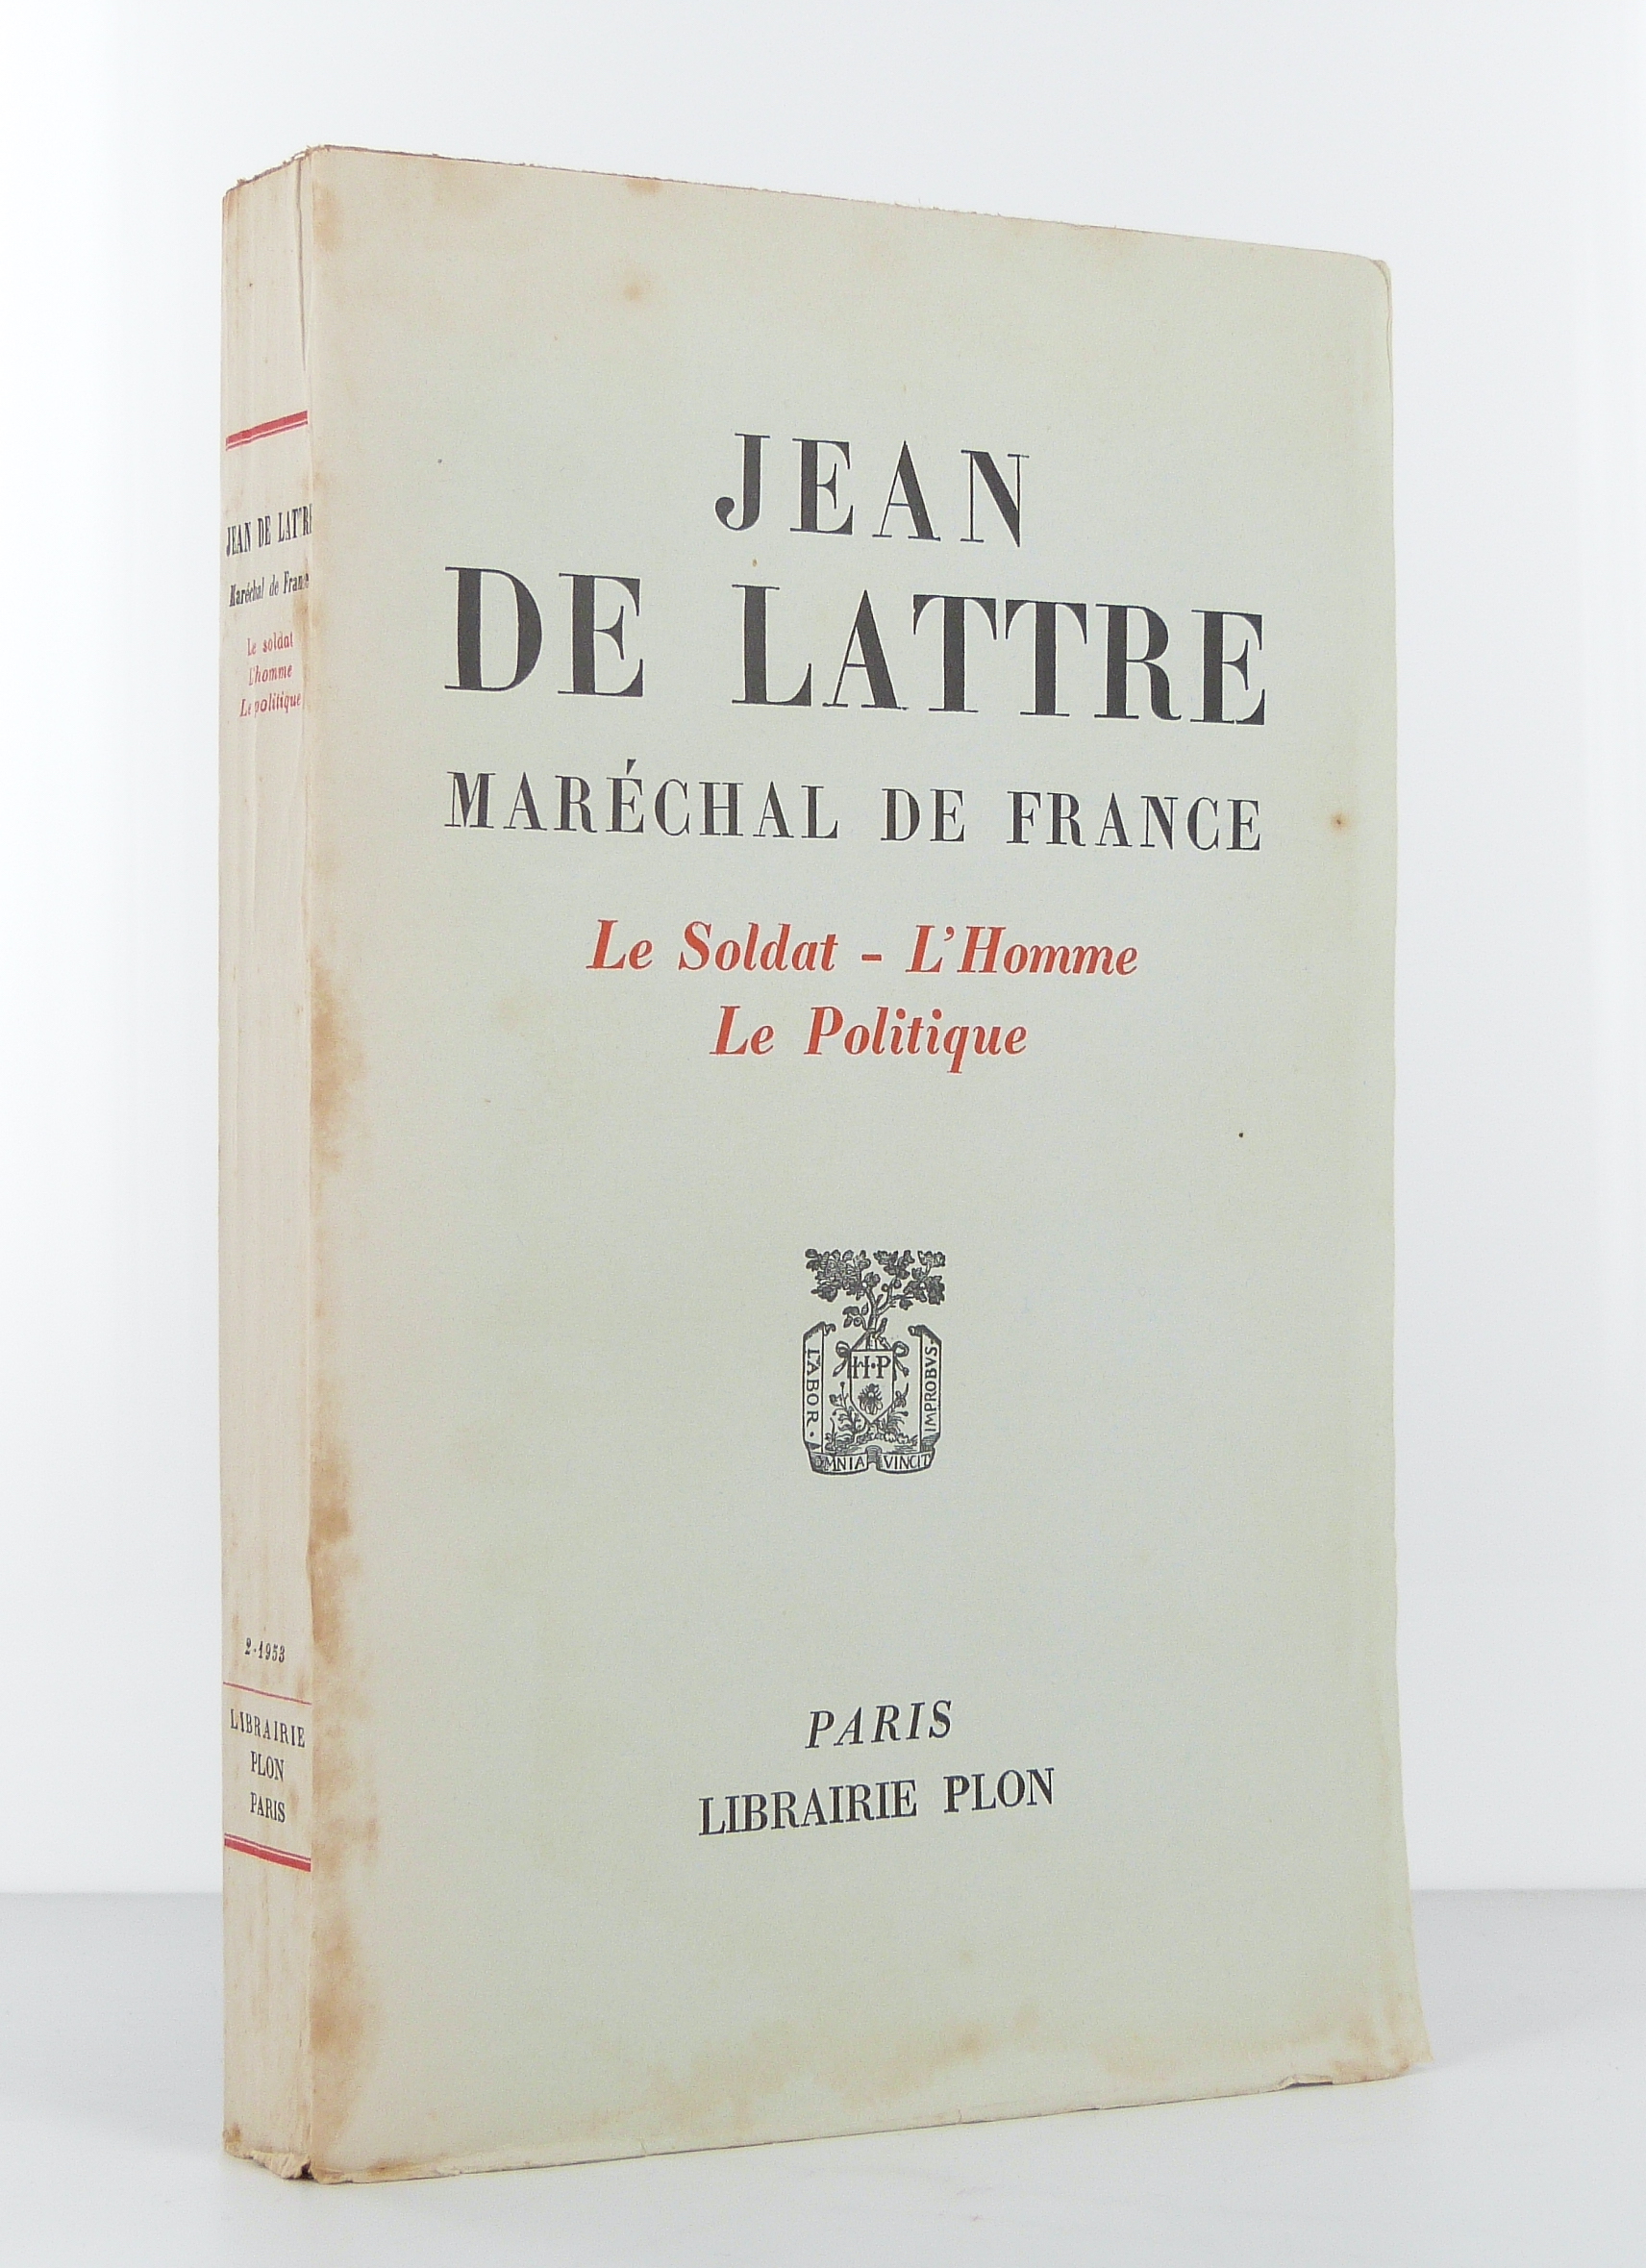 Jean de Lattre, Maréchal de France. 